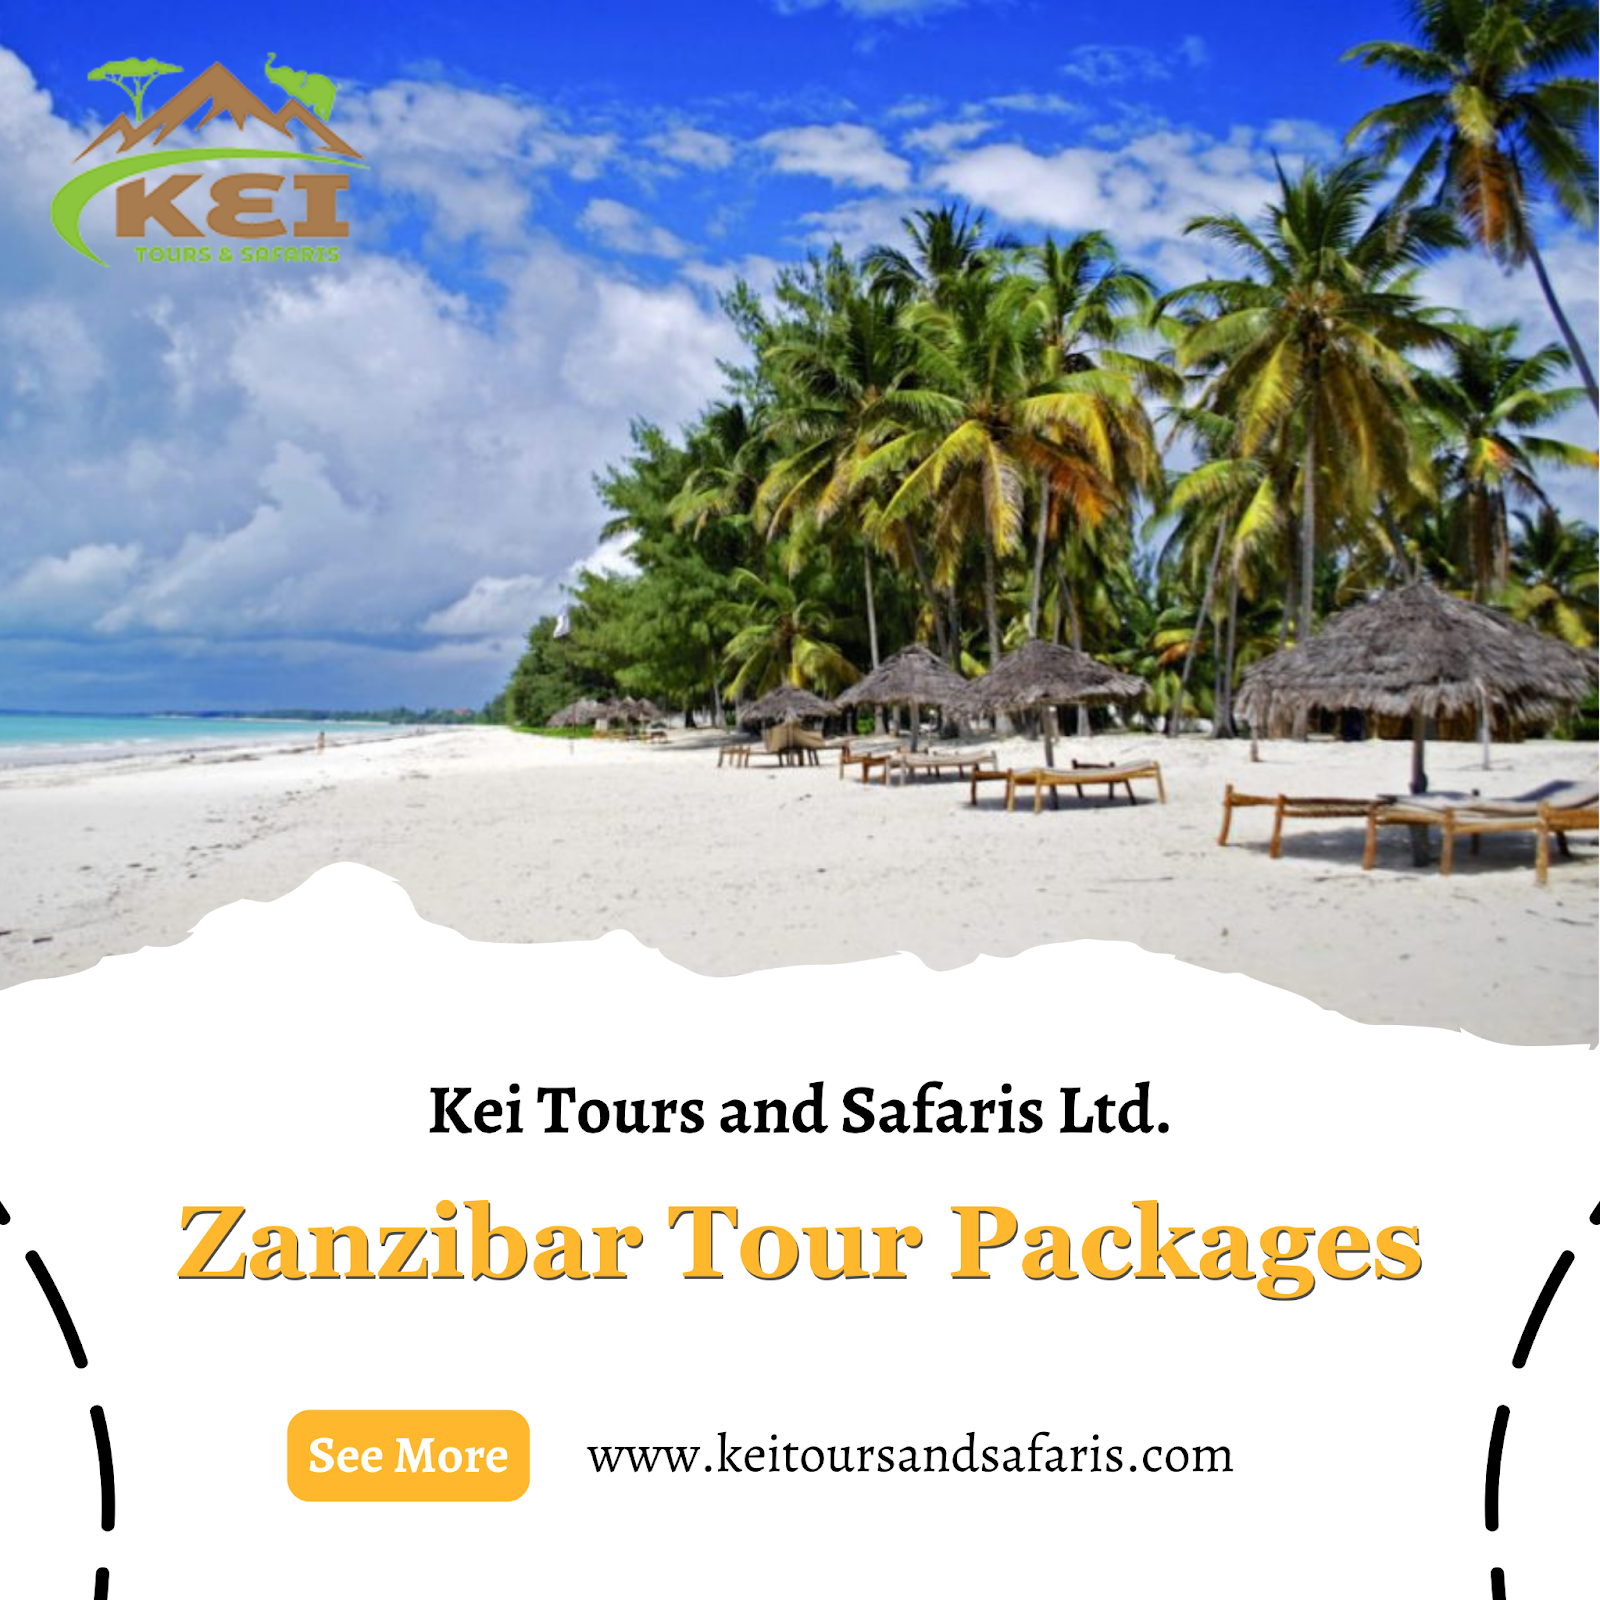 Zanzibar tour packages